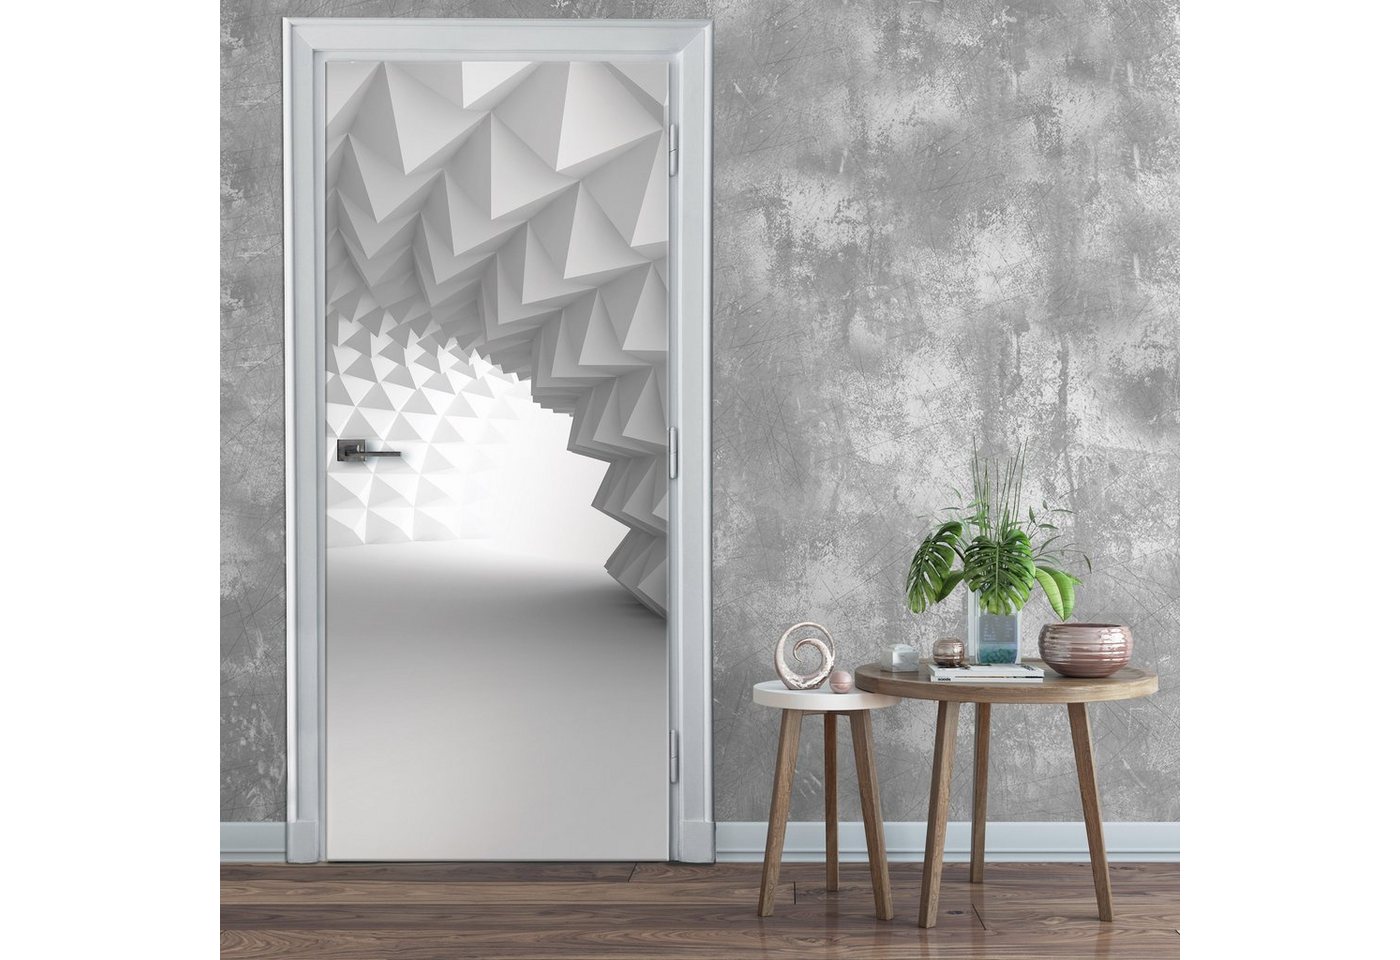 Wallarena Türtapete Selbstklebend Tunnel 3D Effekt Türposter Türfolie Türaufkleber Fototapete für Tür, 91x211 cm, Glatt, 3D-Optik, Türtapete Selbstklebend von Wallarena